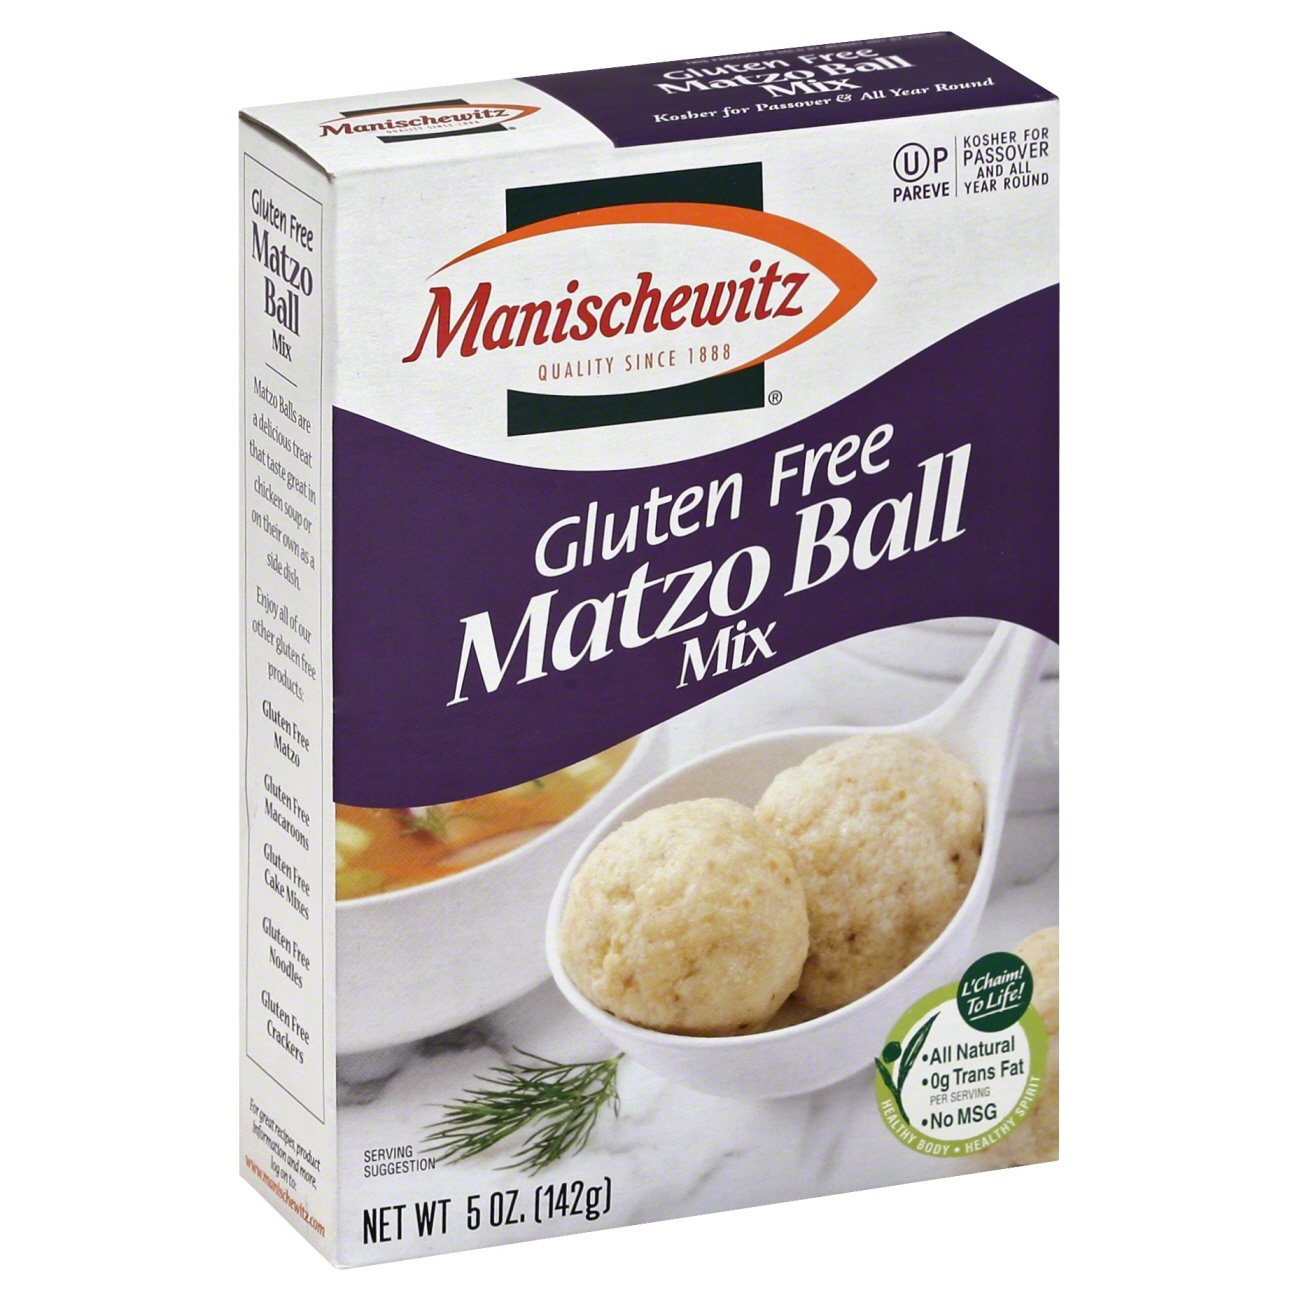 Manischewitz Gluten Free Matzo Ball Mix